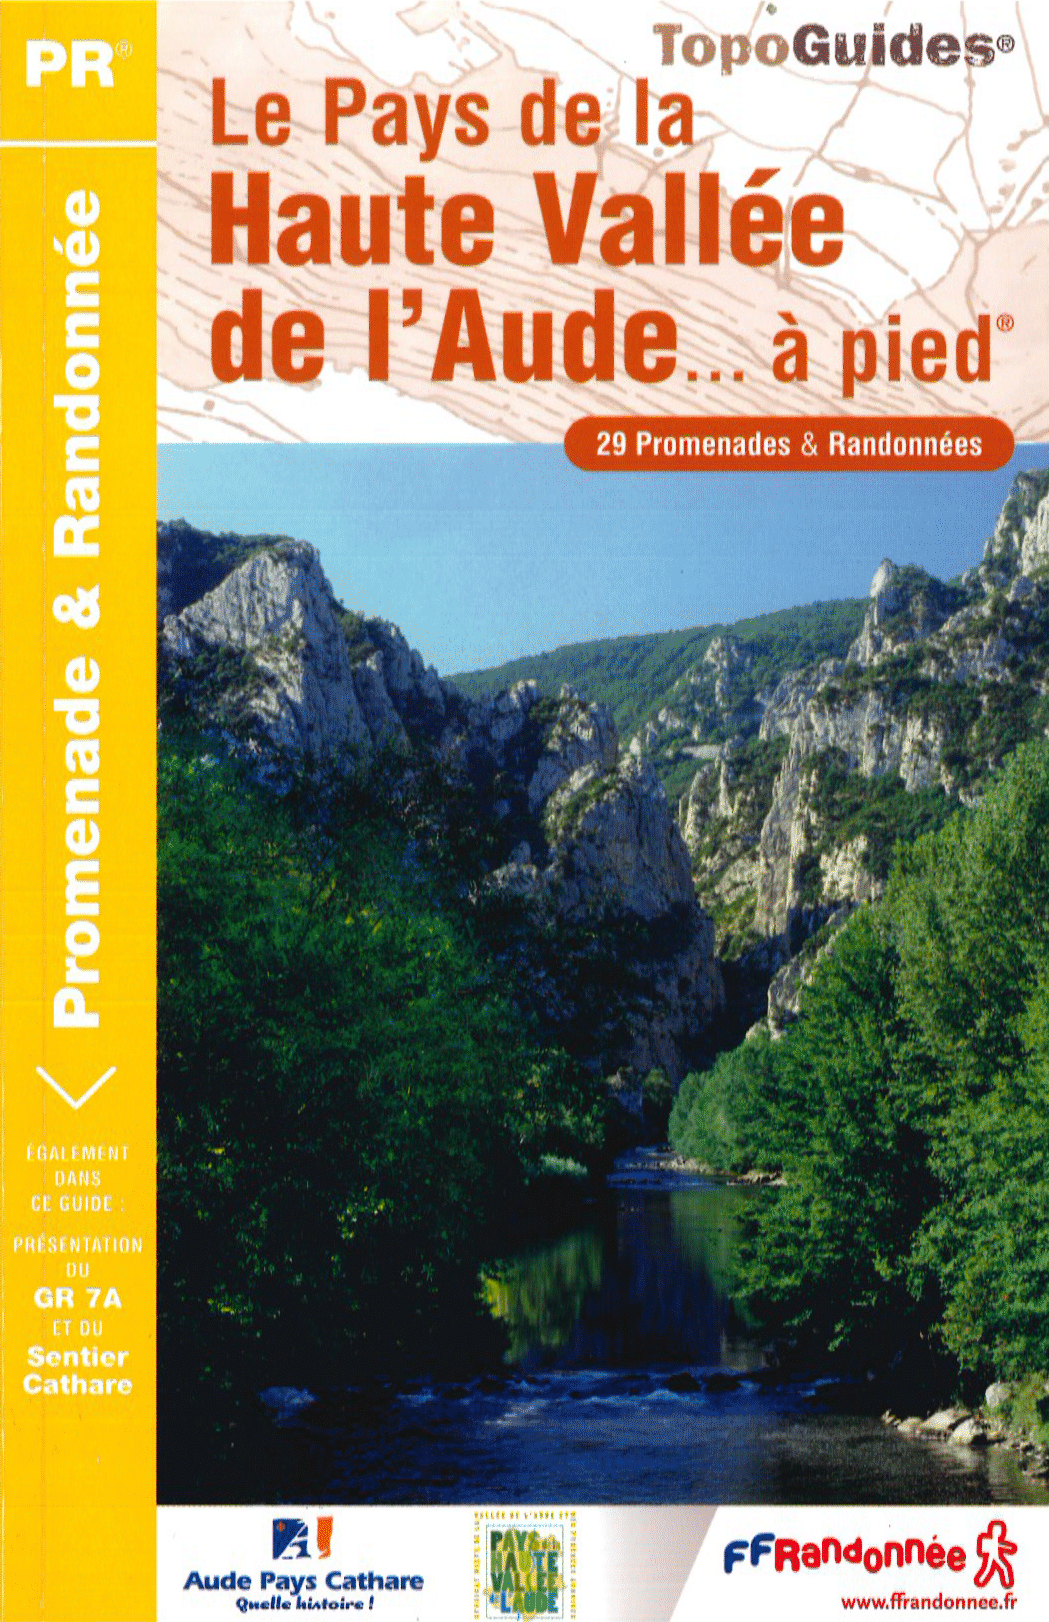 Topo Guide – Le Pays de la Haute Vallée de l’Aude… à pied (PR)